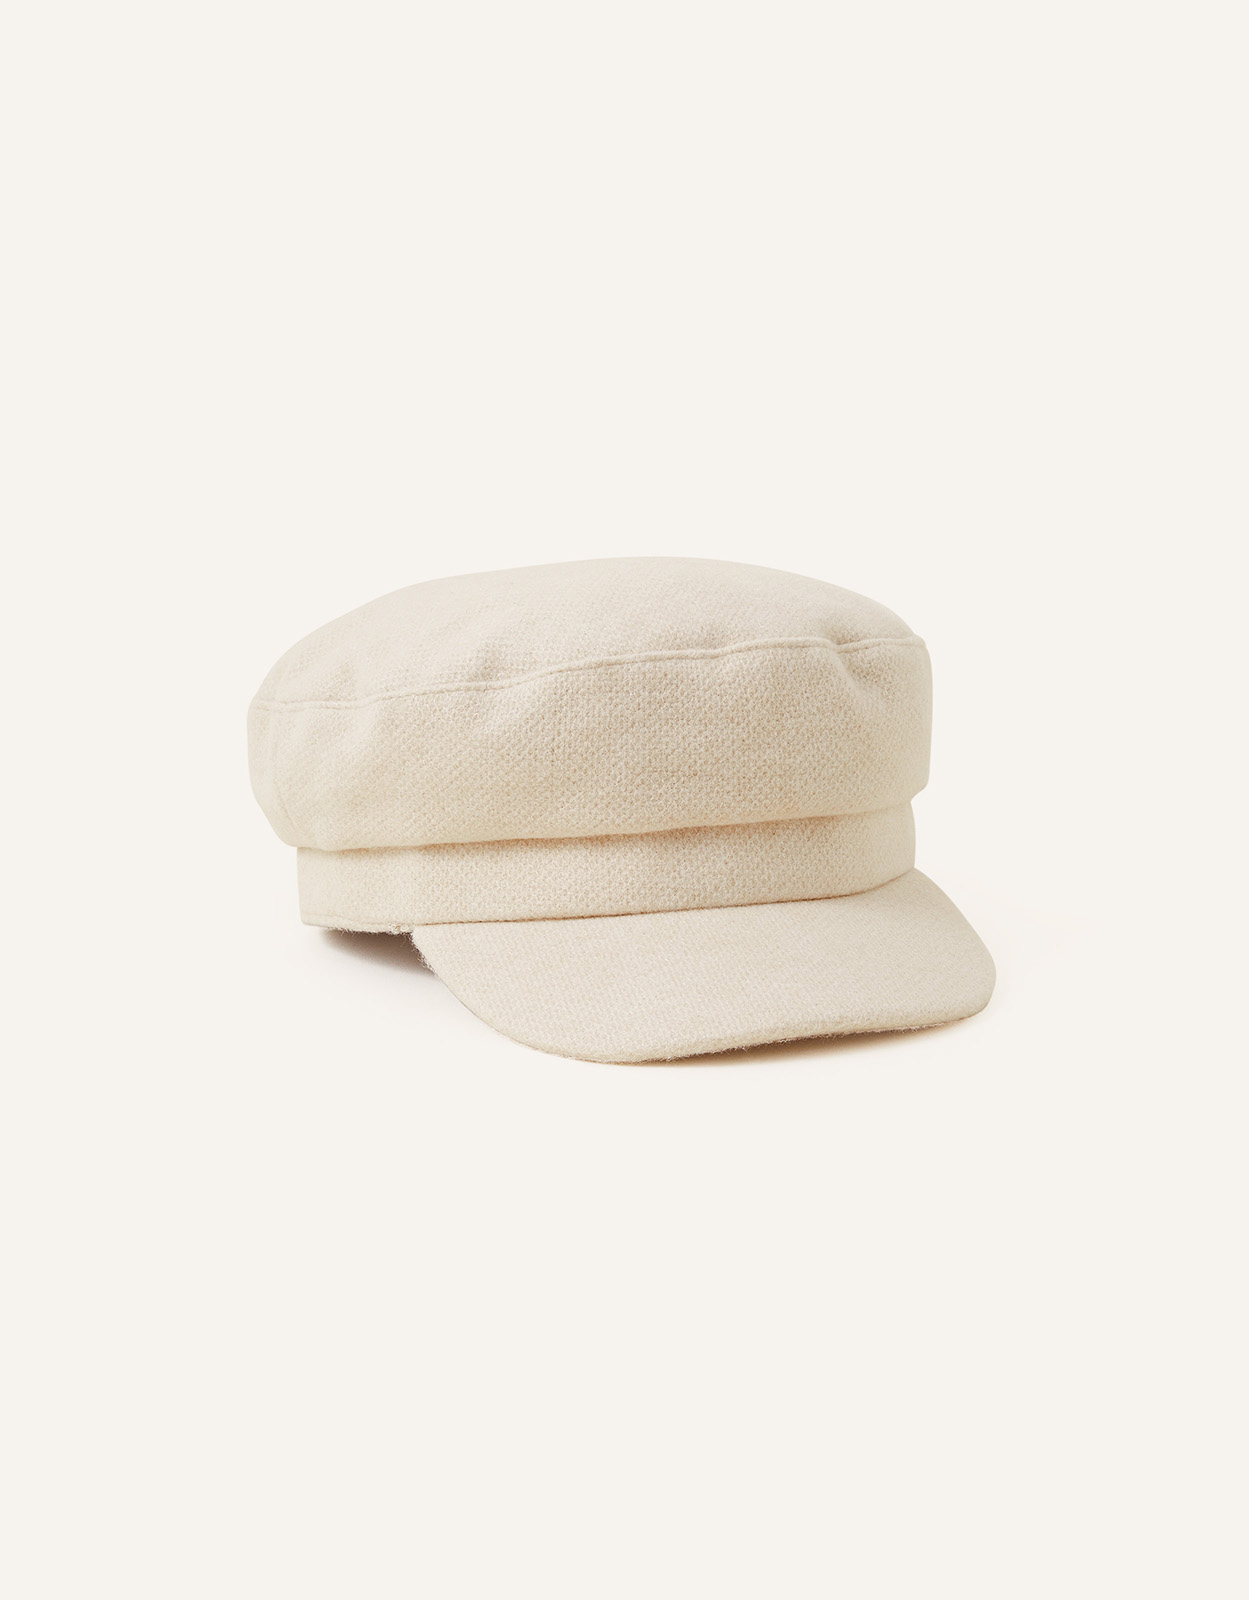 Accessorize Women's Soft Textured Baker Boy Hat Natural